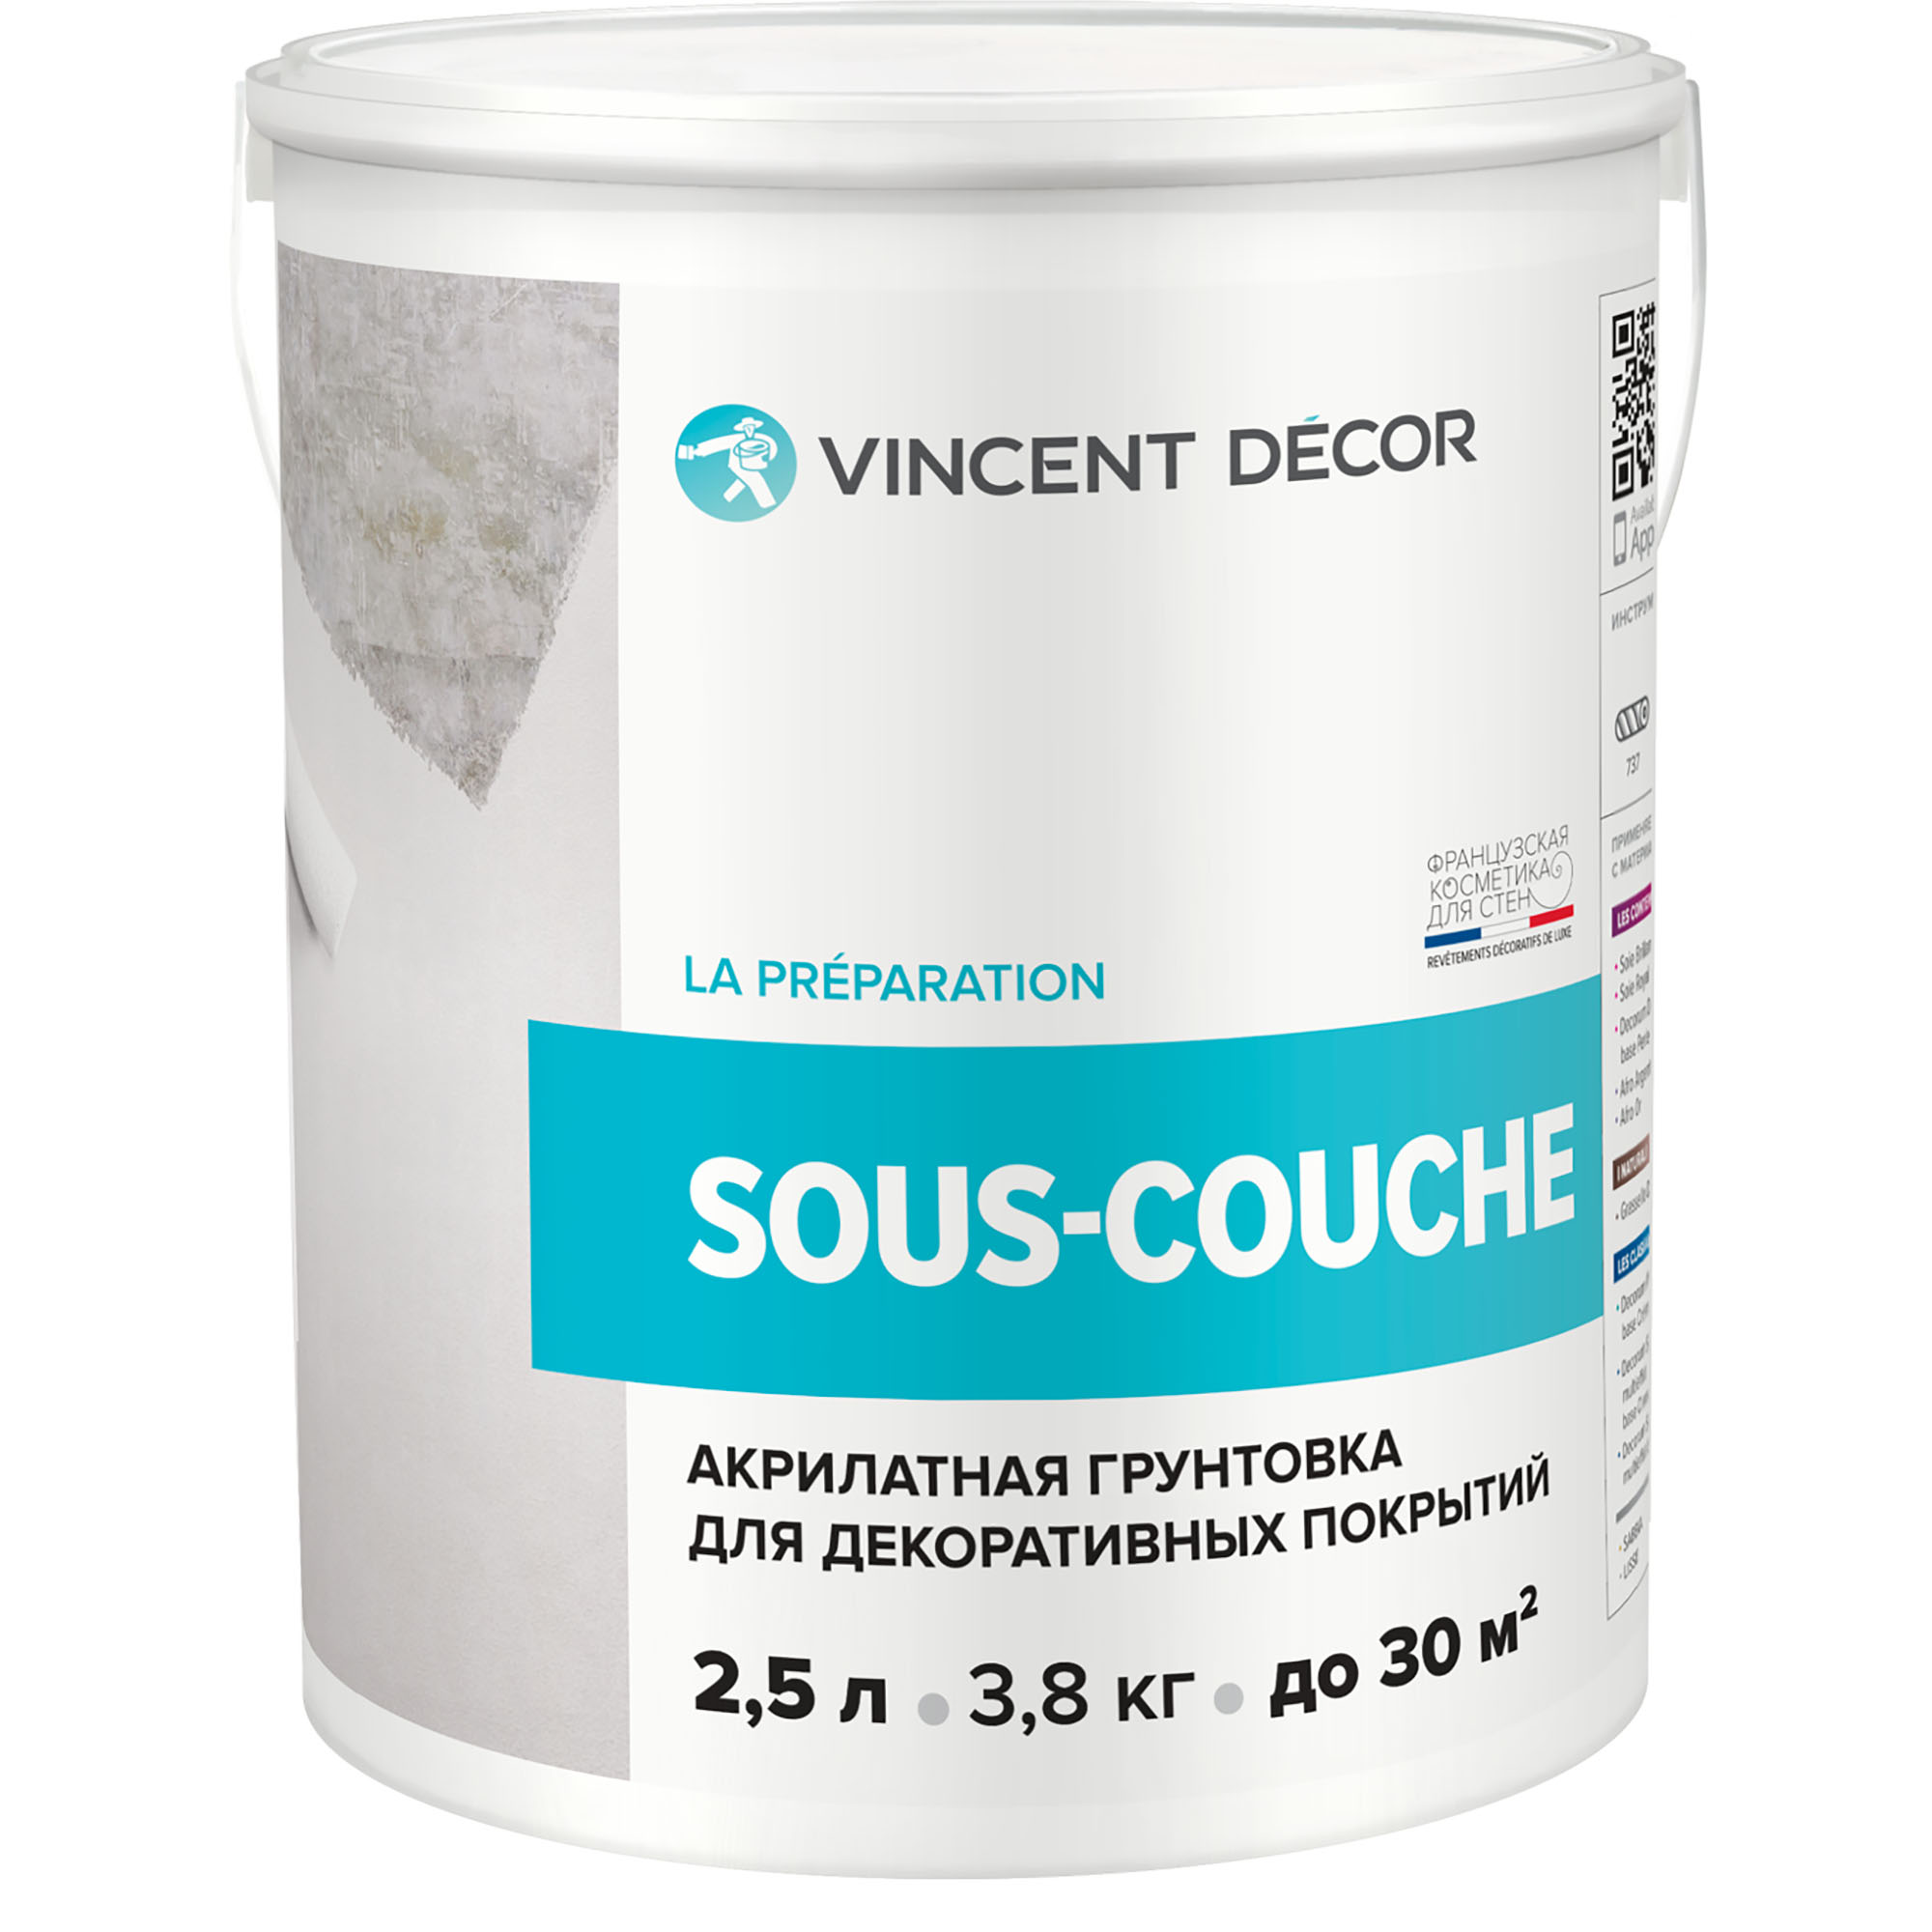 Грунтовка для декоративных покрытий Vincent Decor Sous-Couсhe 2,5 л грунтовка изольту 0 48 кг vincent